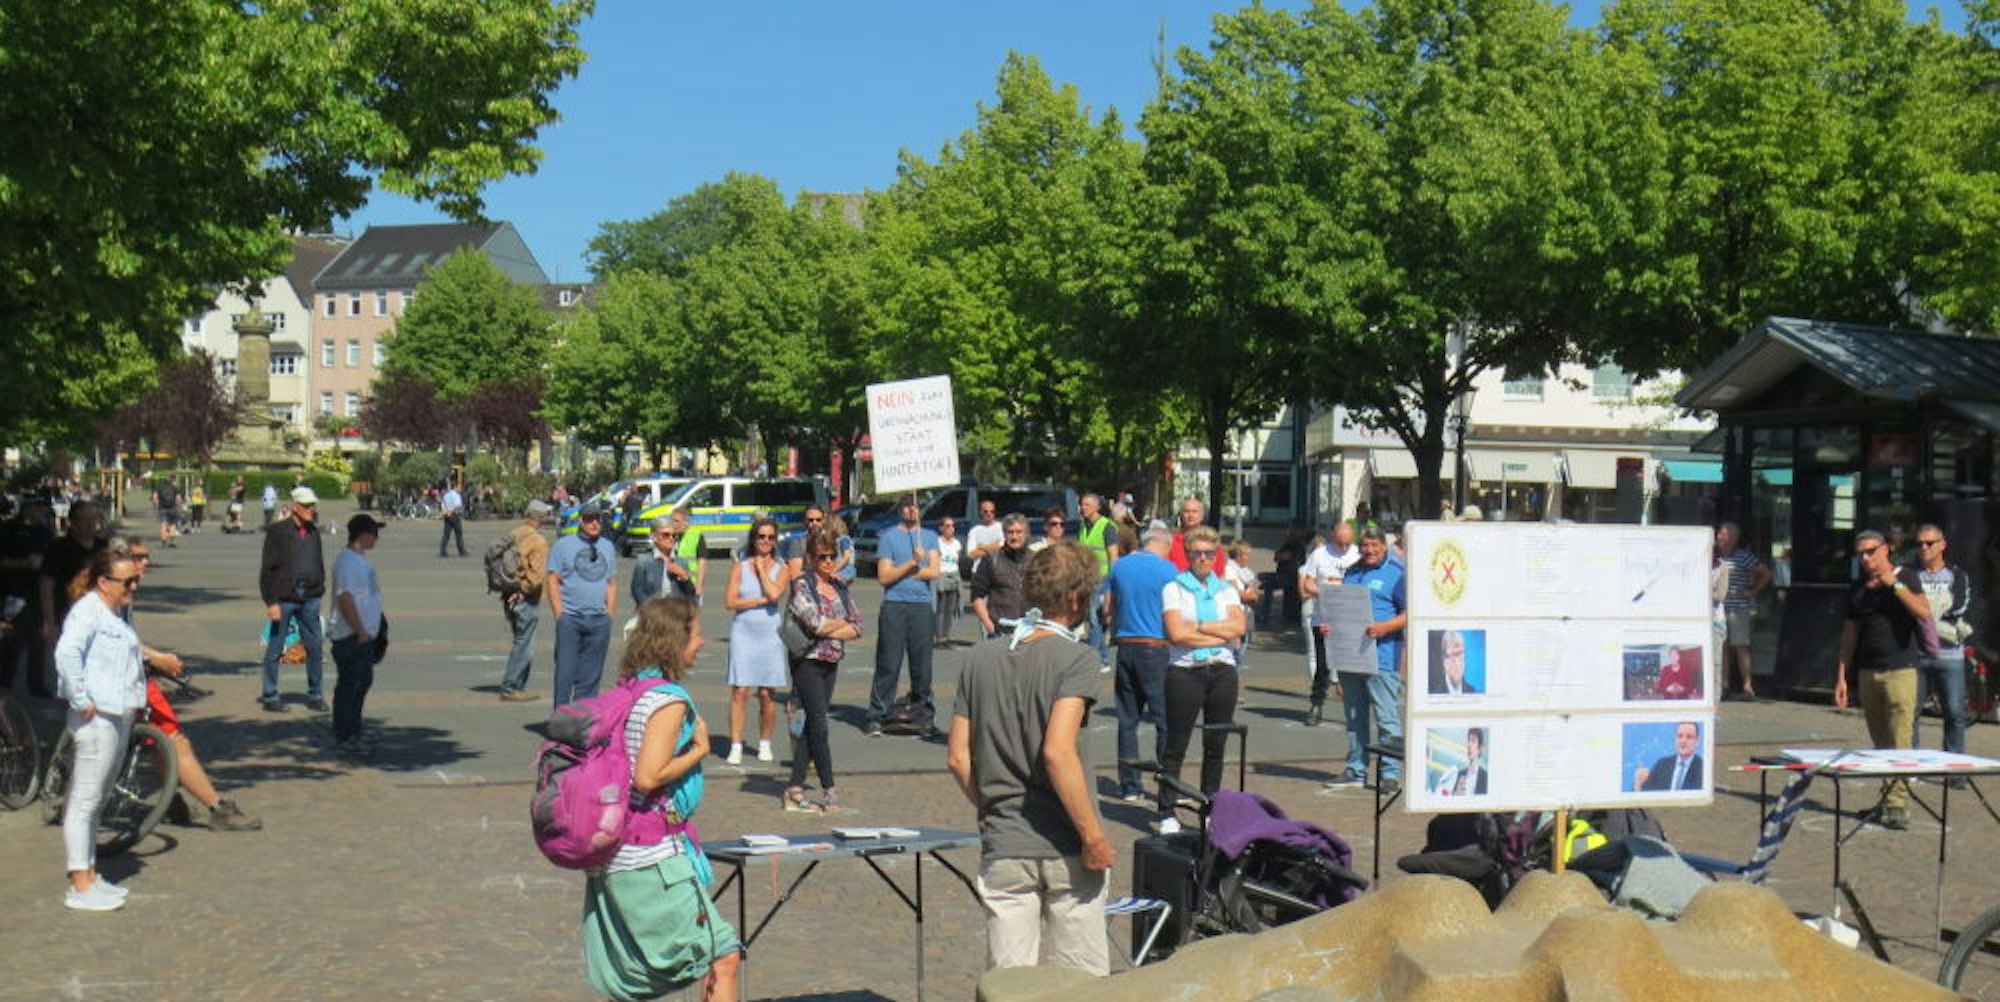 Demo auf dem Marktplatz gegen die Einschränkung von Grundrechten.